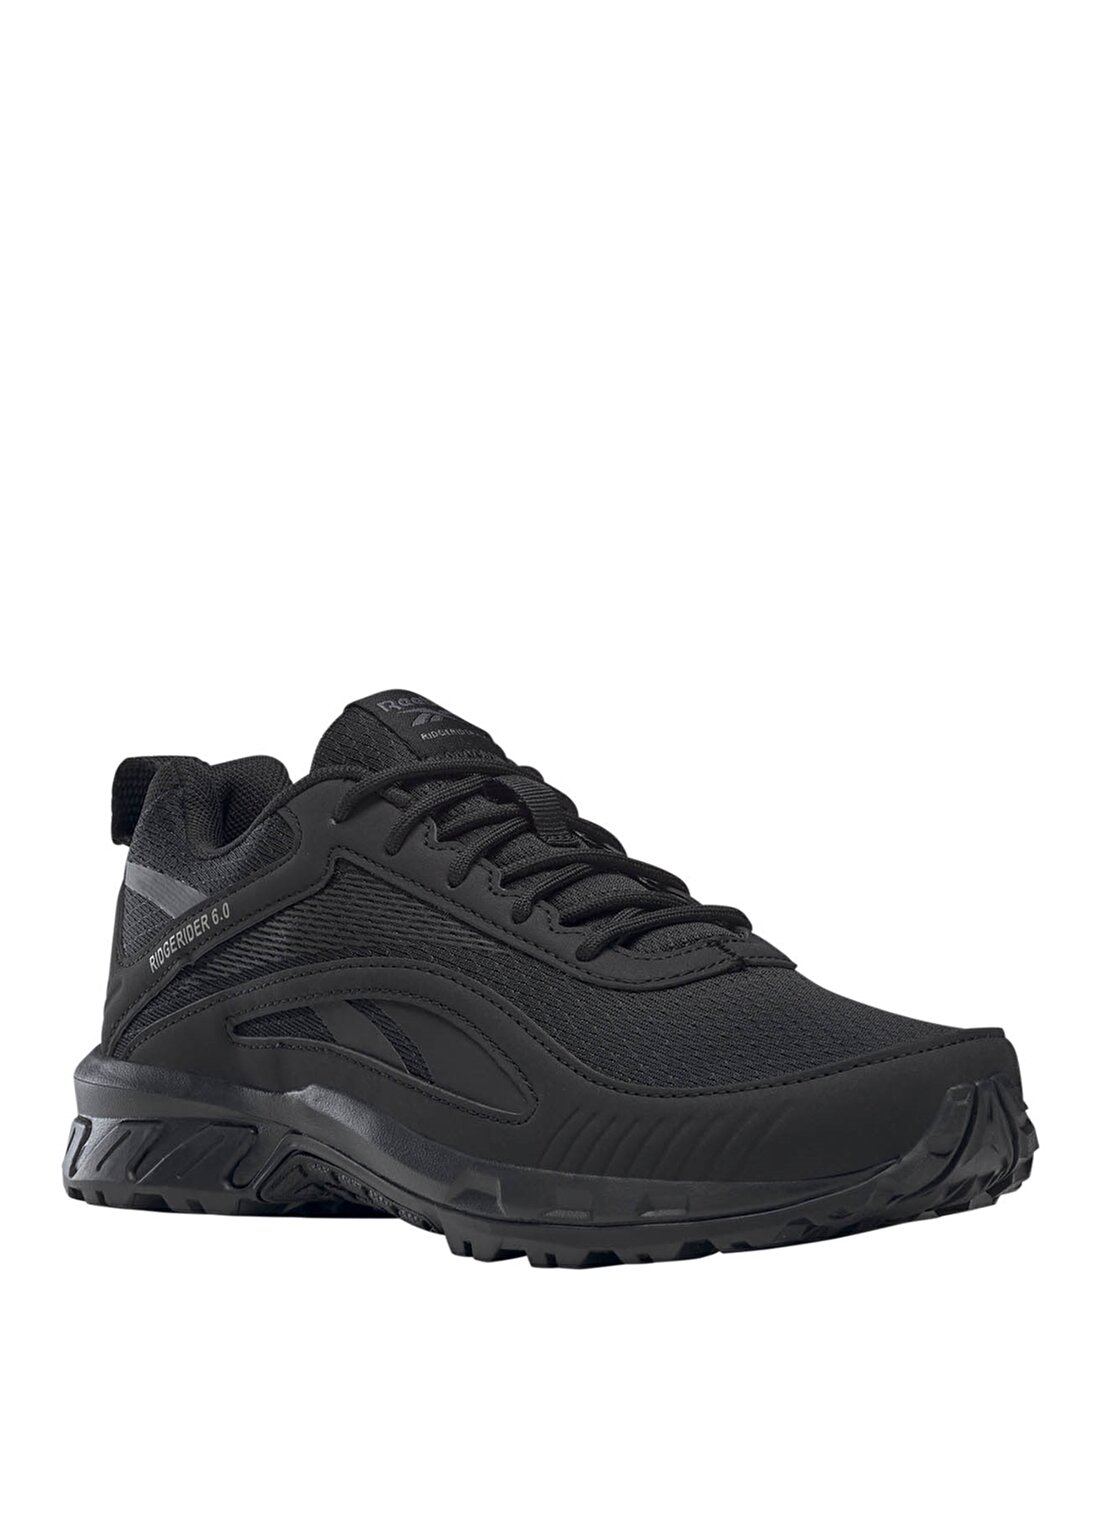 Reebok Siyah - Gri Kadın Koşu Ayakkabısı FW9652 RIDGERIDER 6.0